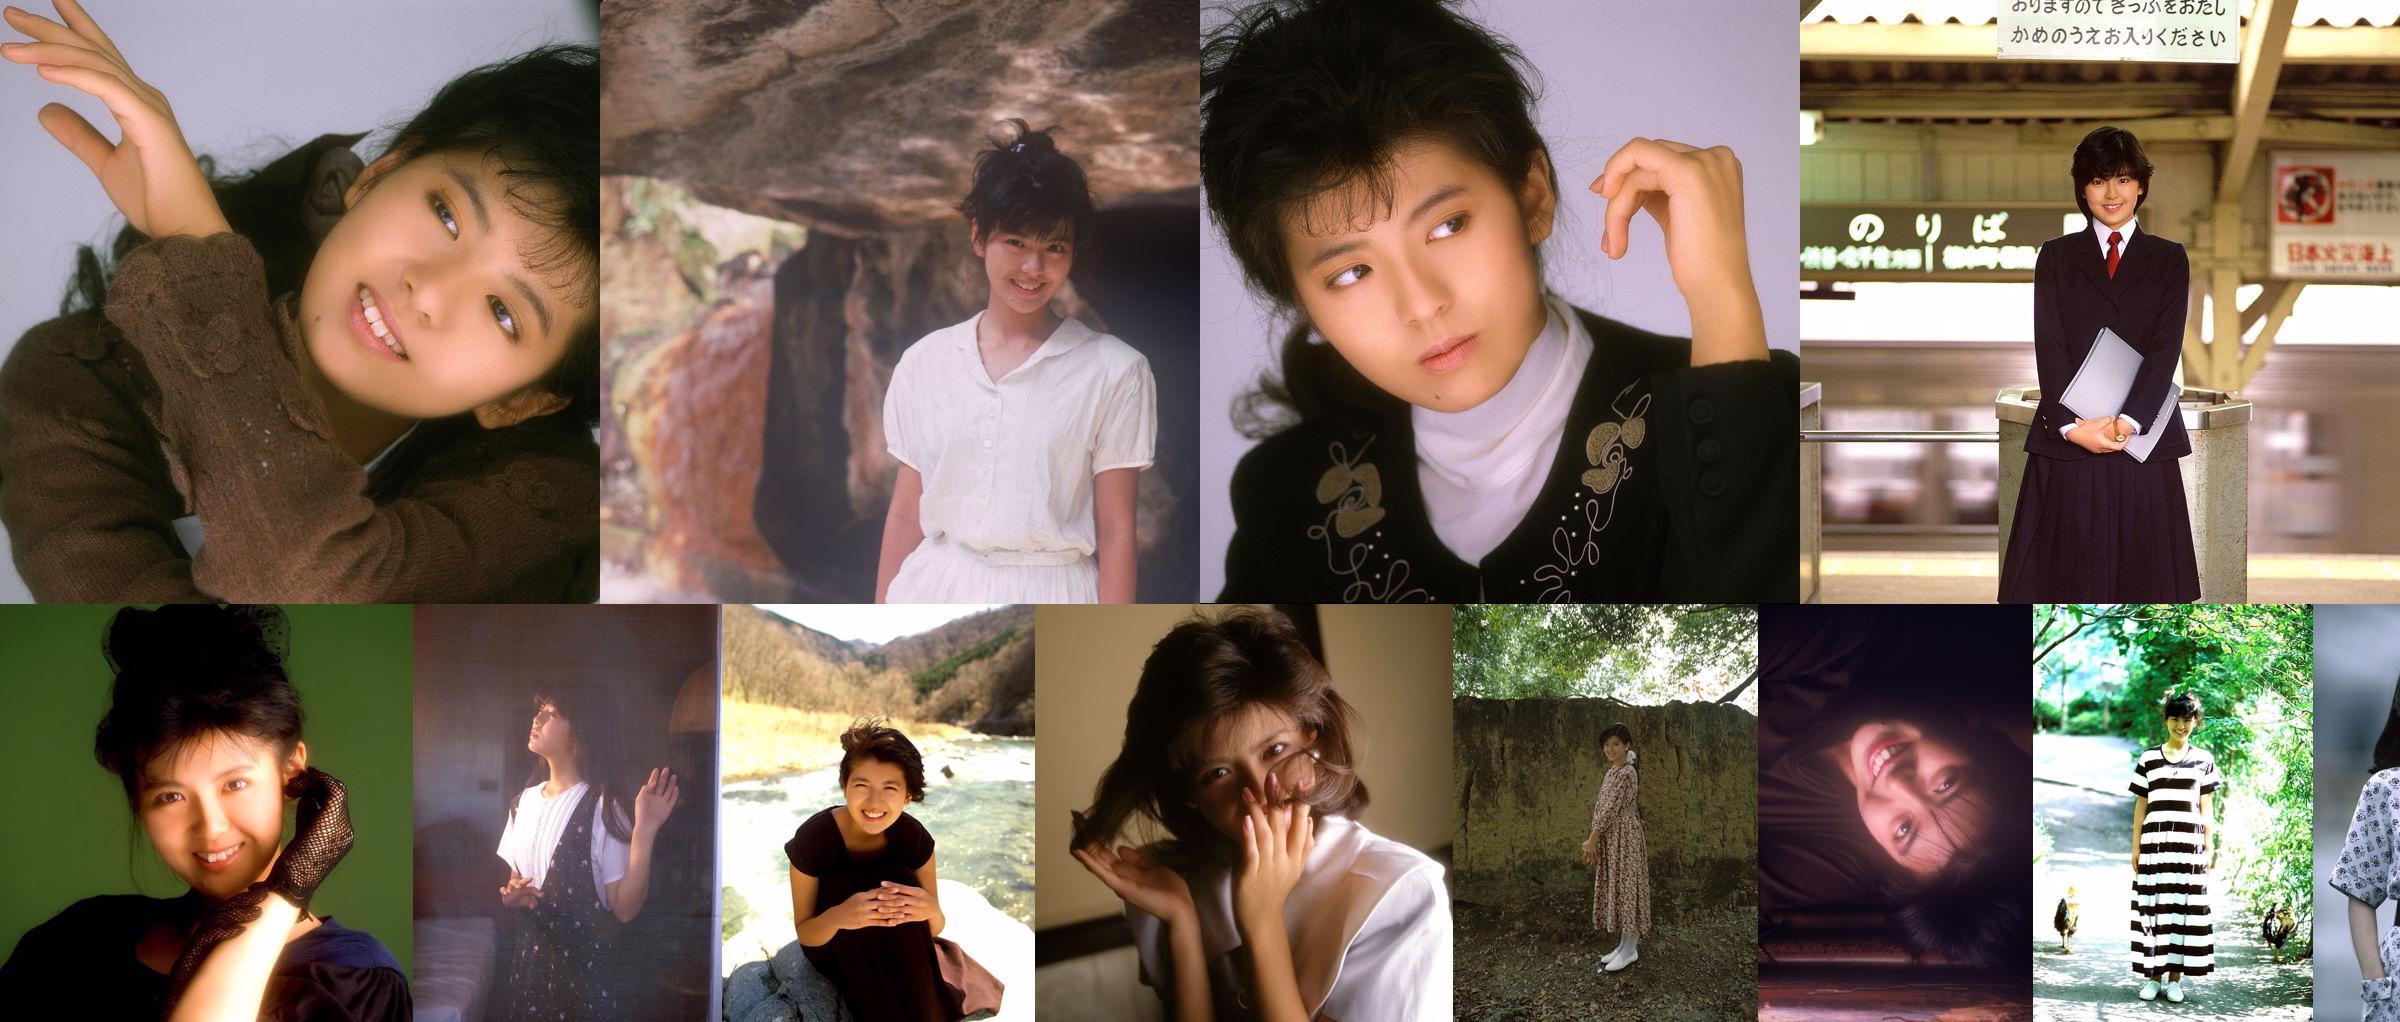 [Ojos NS] SF-No.215 Yoko Minamino Yoko Minamino No.710a93 Página 1